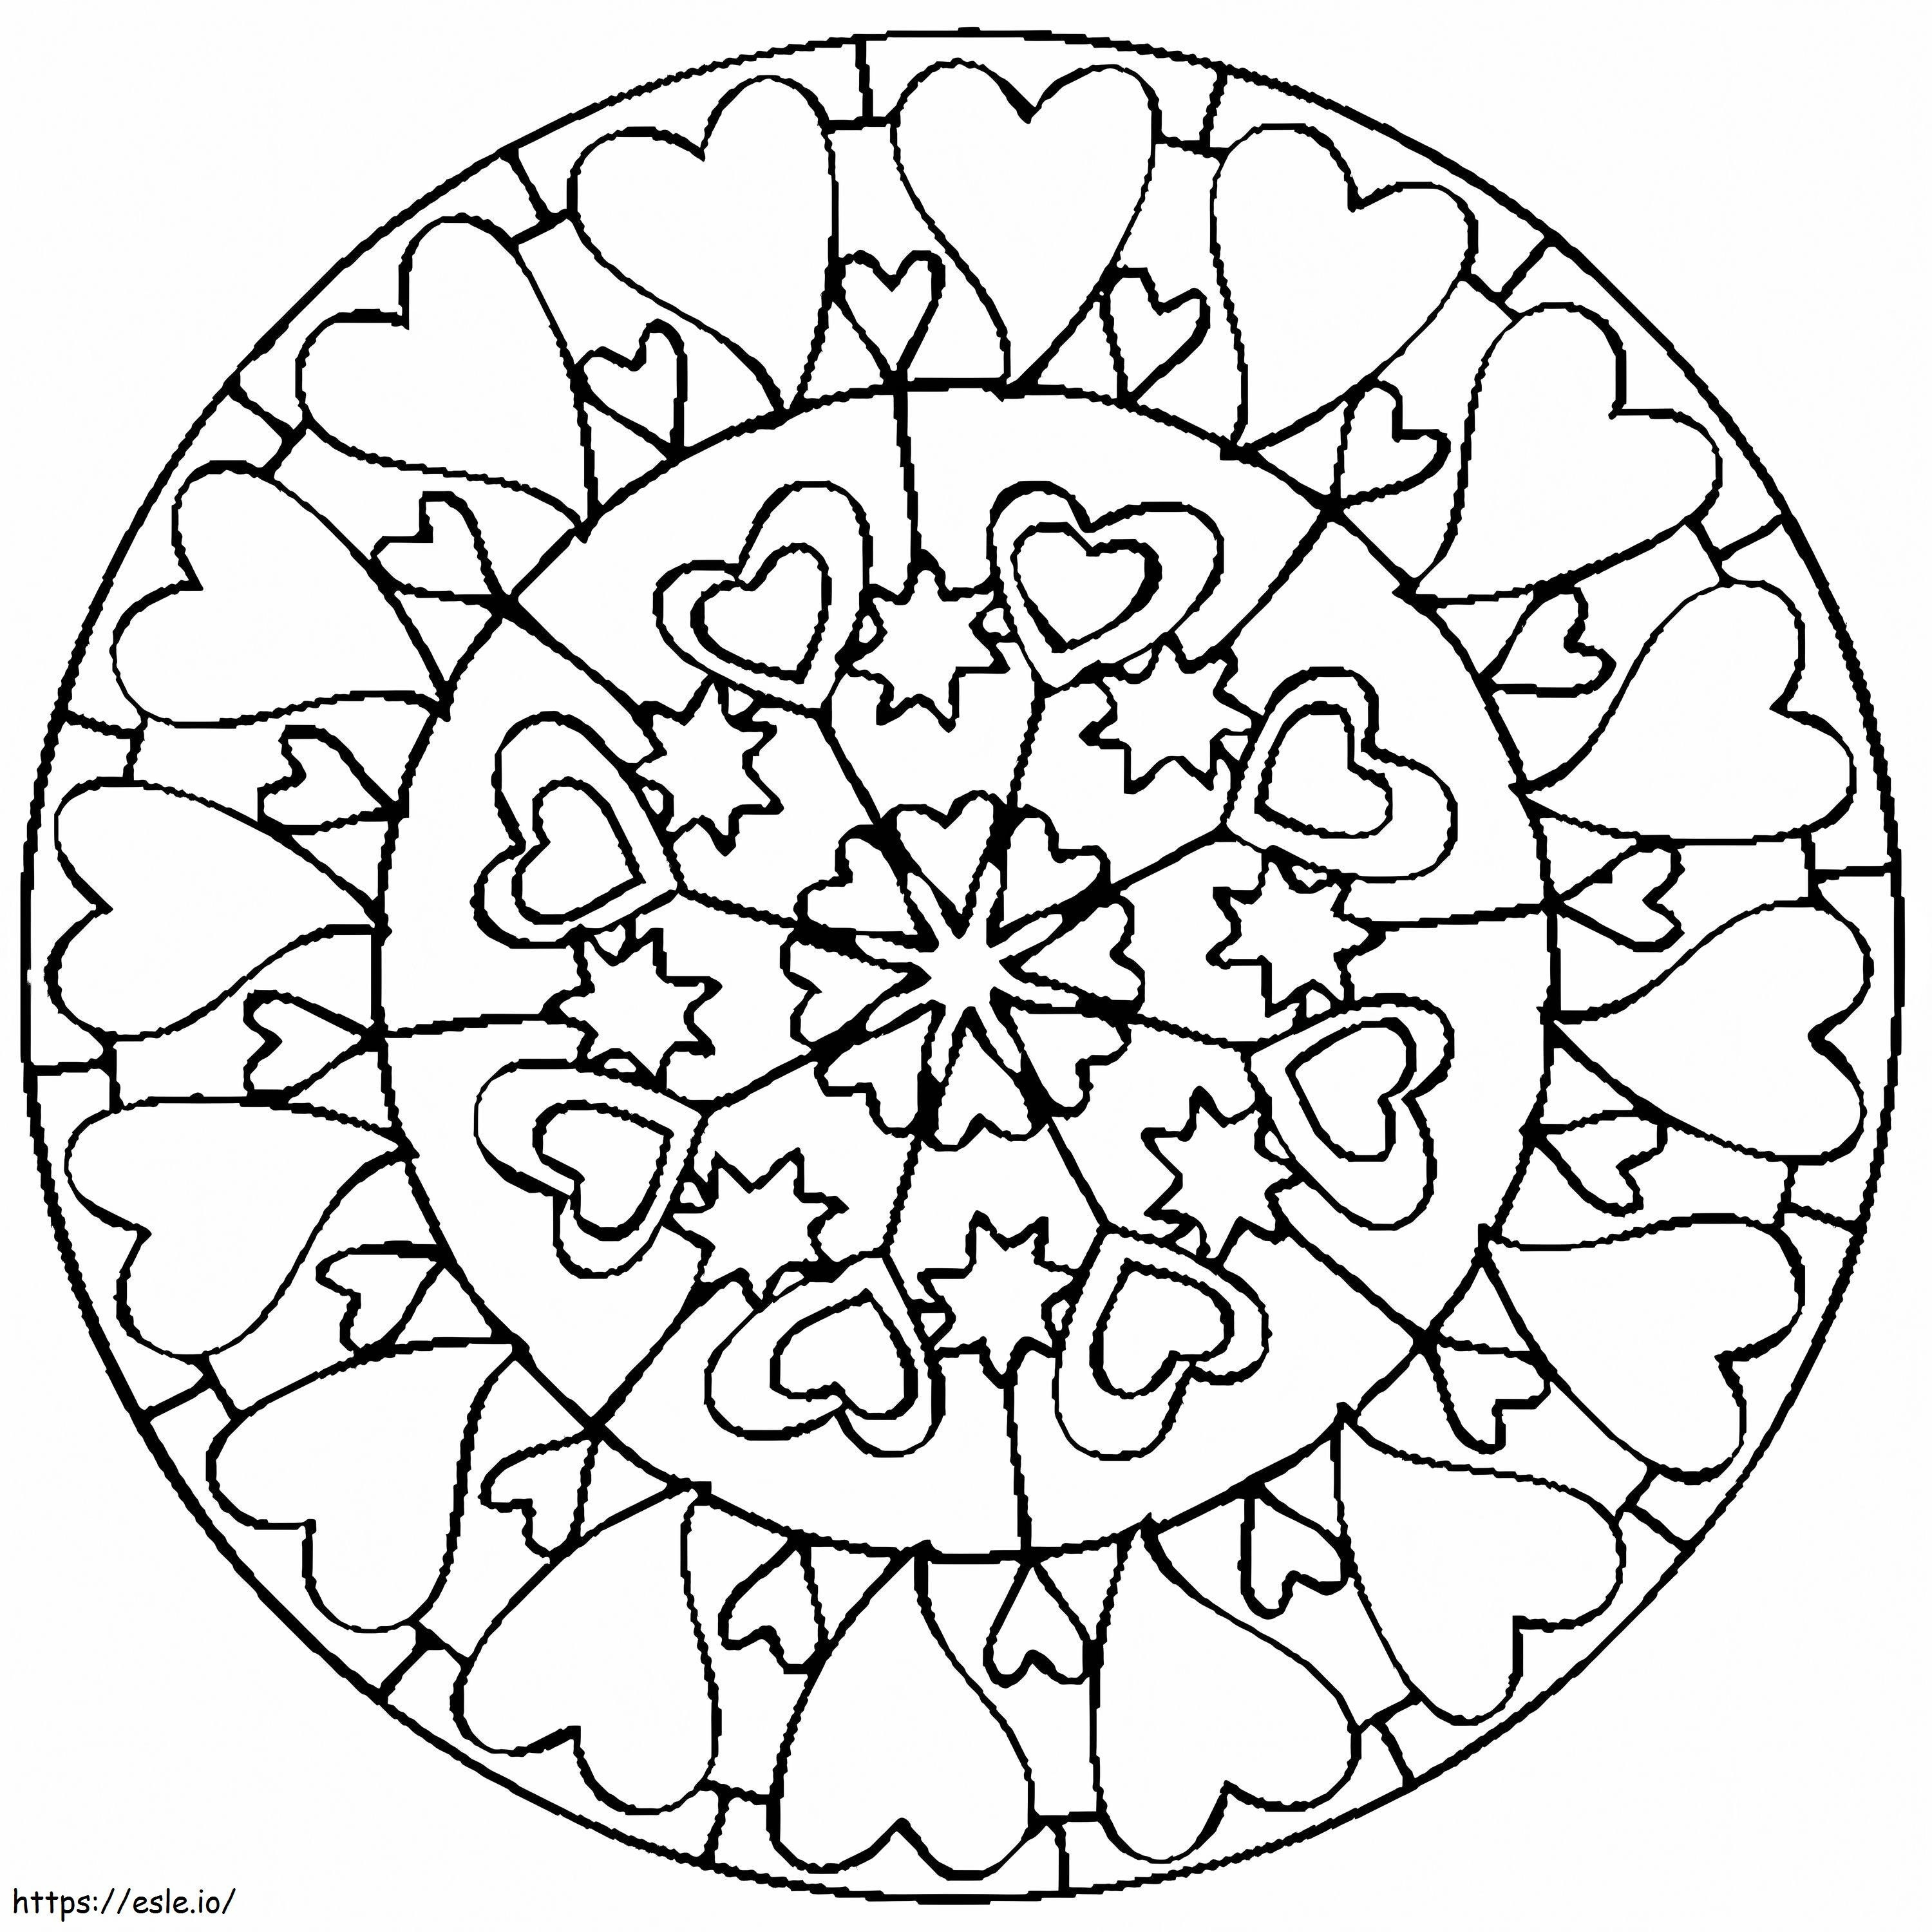 Einfaches Herz-Mandala im Kreis ausmalbilder